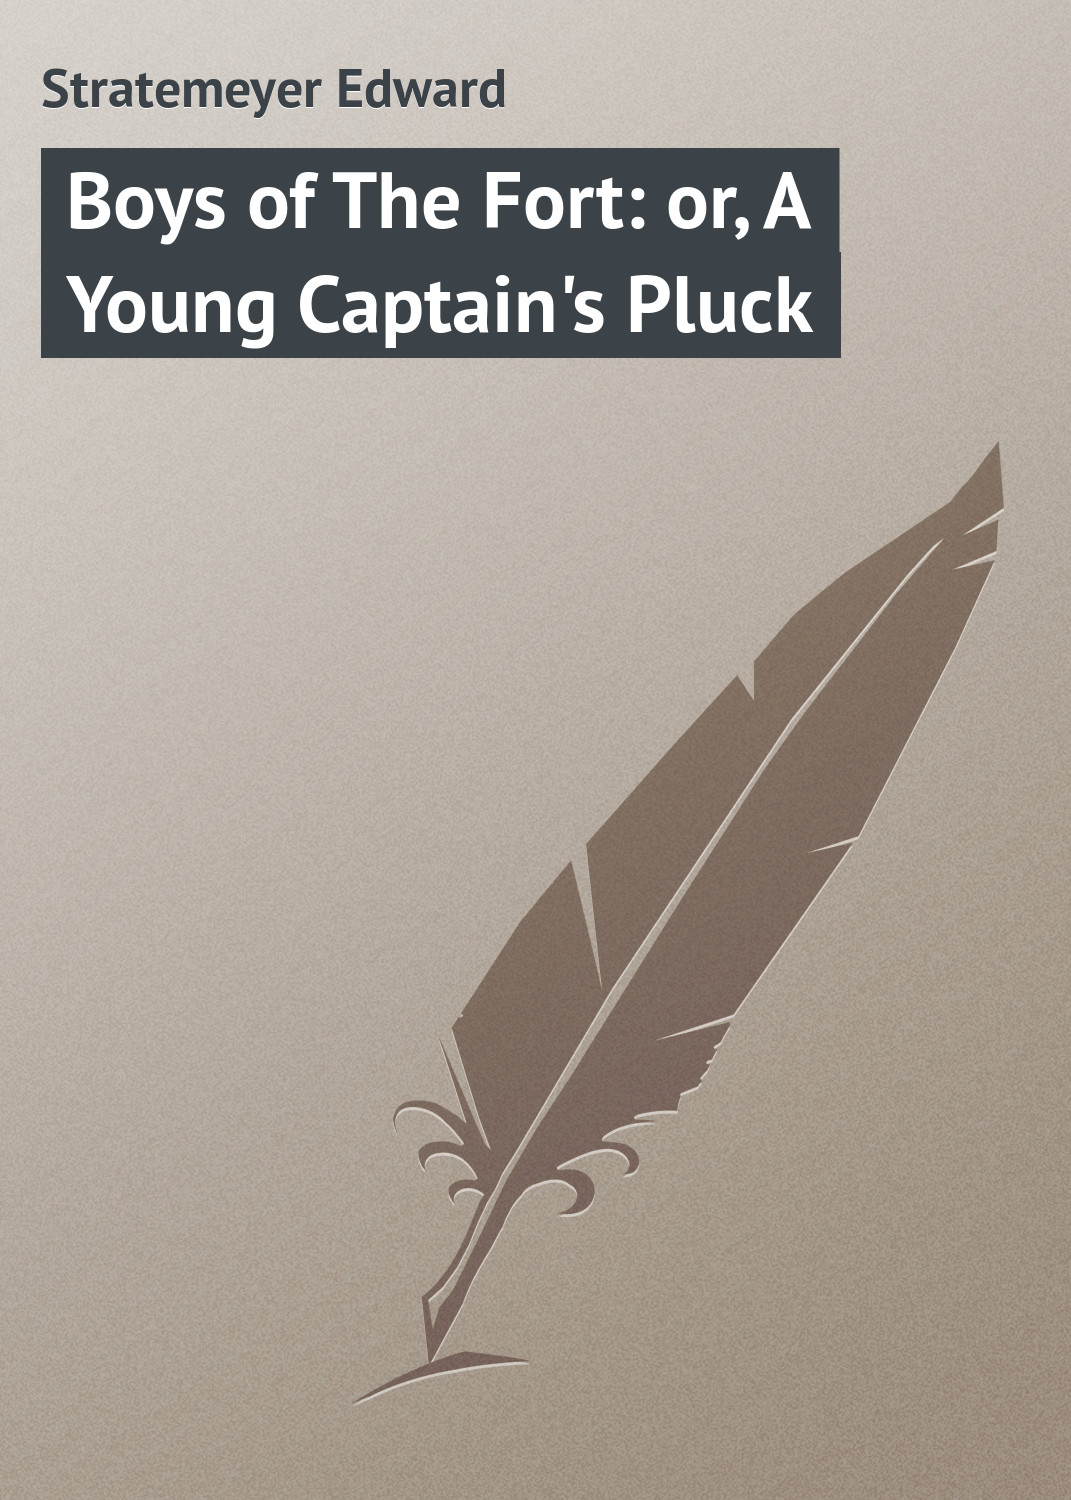 Книга Boys of The Fort: or, A Young Captain's Pluck из серии , созданная Edward Stratemeyer, может относится к жанру Зарубежная классика, Зарубежные детские книги. Стоимость электронной книги Boys of The Fort: or, A Young Captain's Pluck с идентификатором 23148115 составляет 5.99 руб.